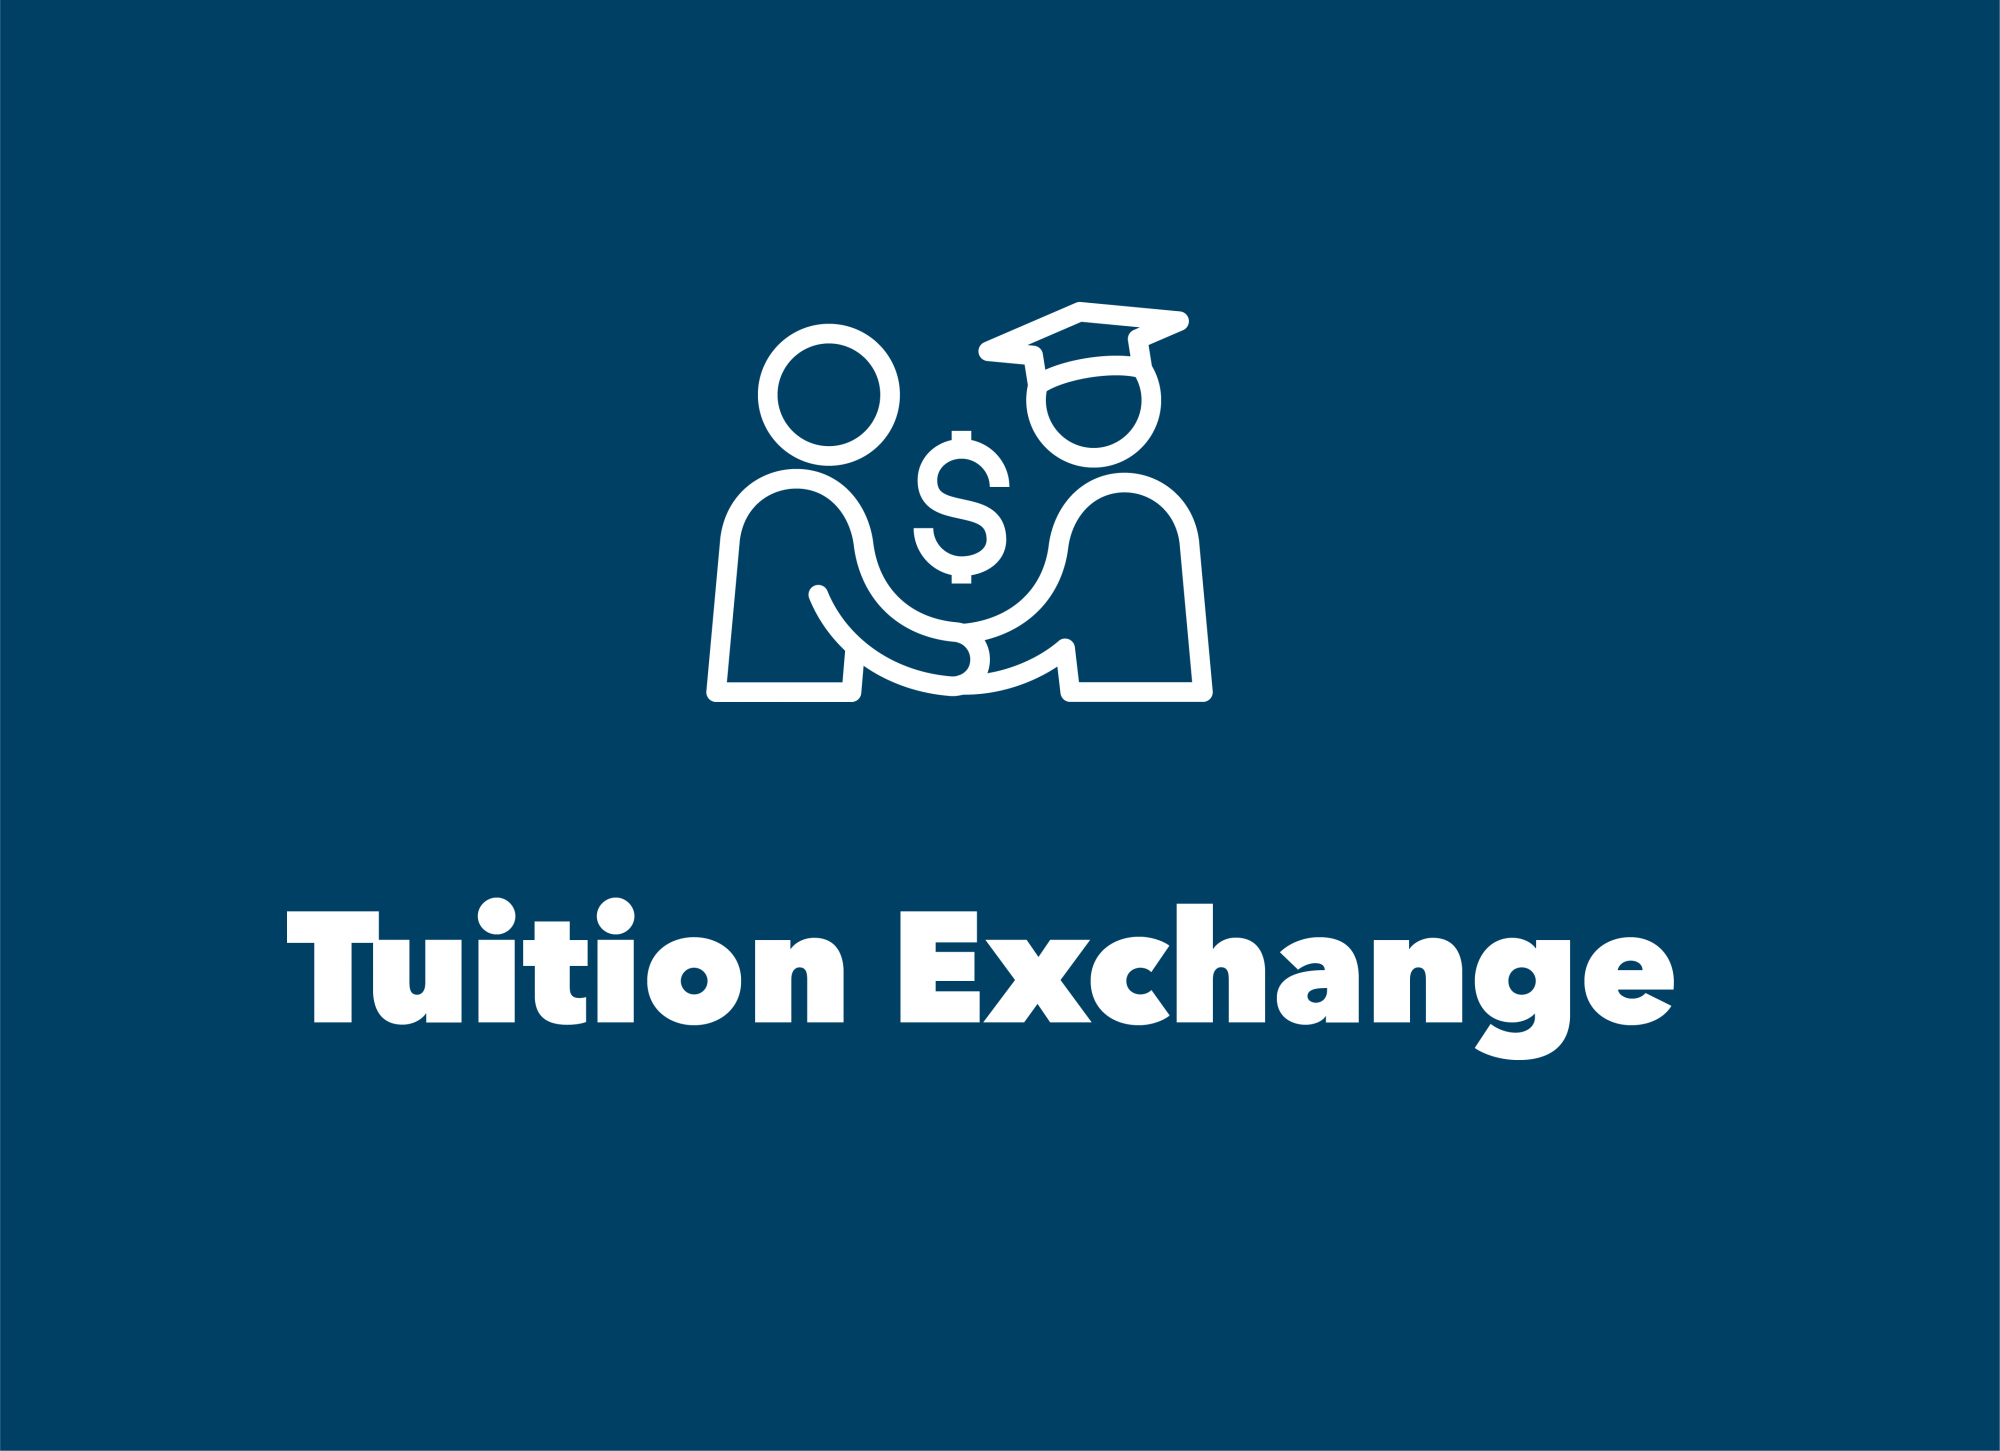 Tuition Exchange Program